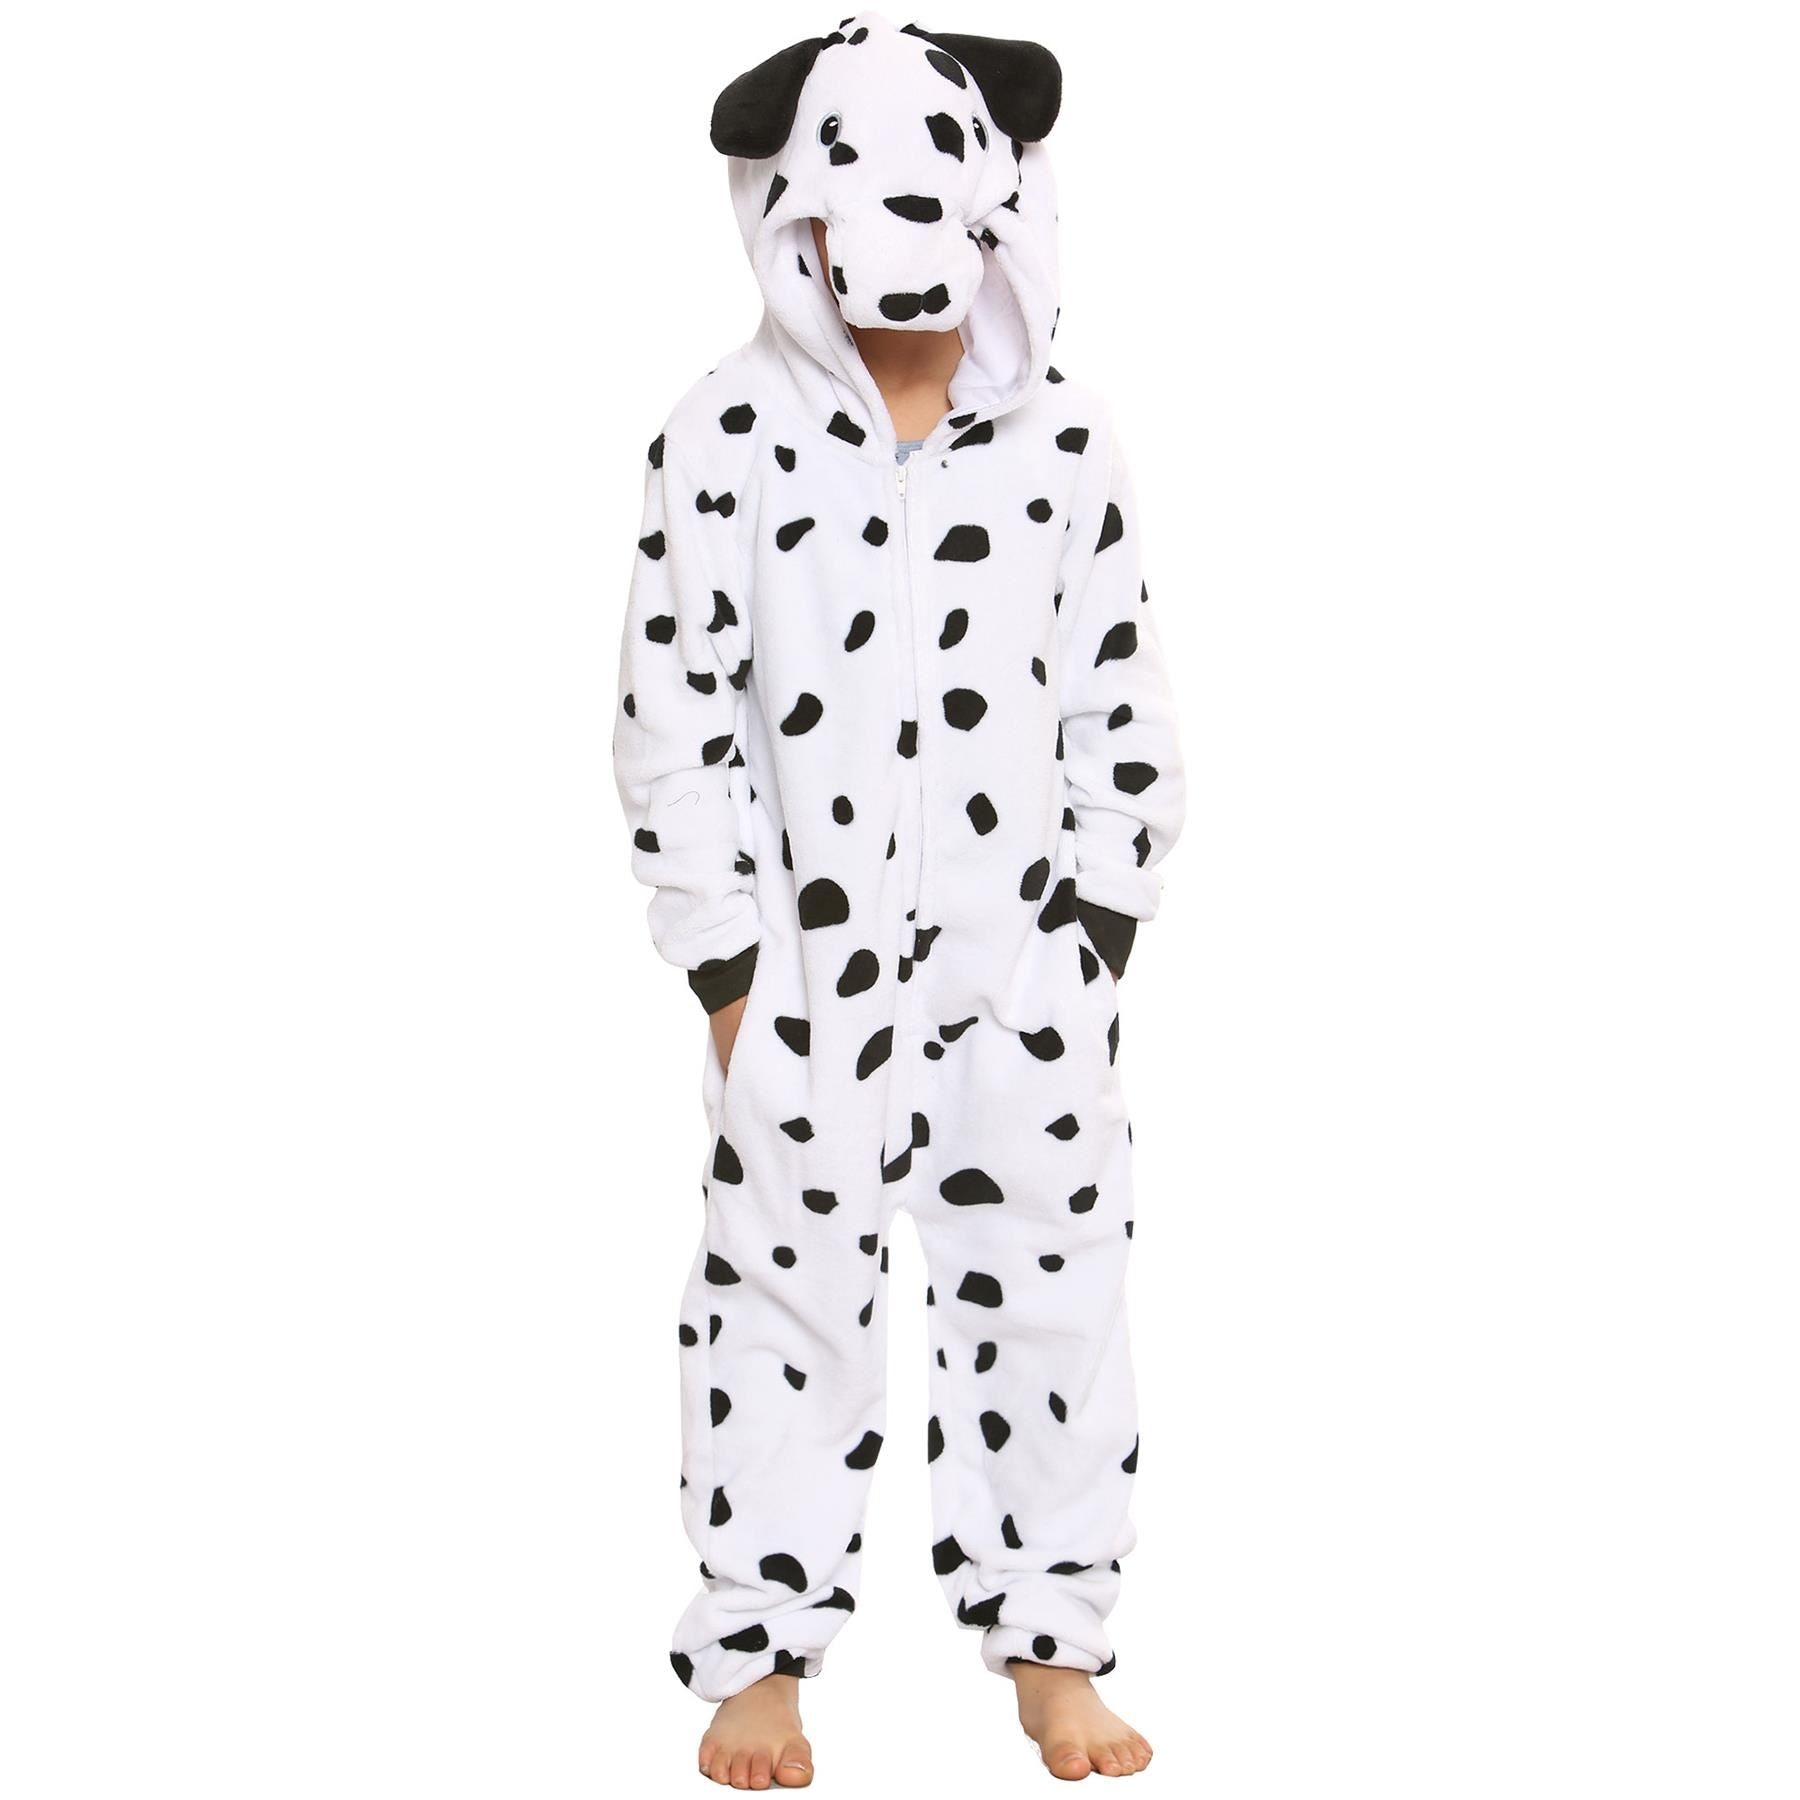 A2Z Onesie One Piece Kids Unisex Animal Pyjamas Dalmatian World Book Day Costume